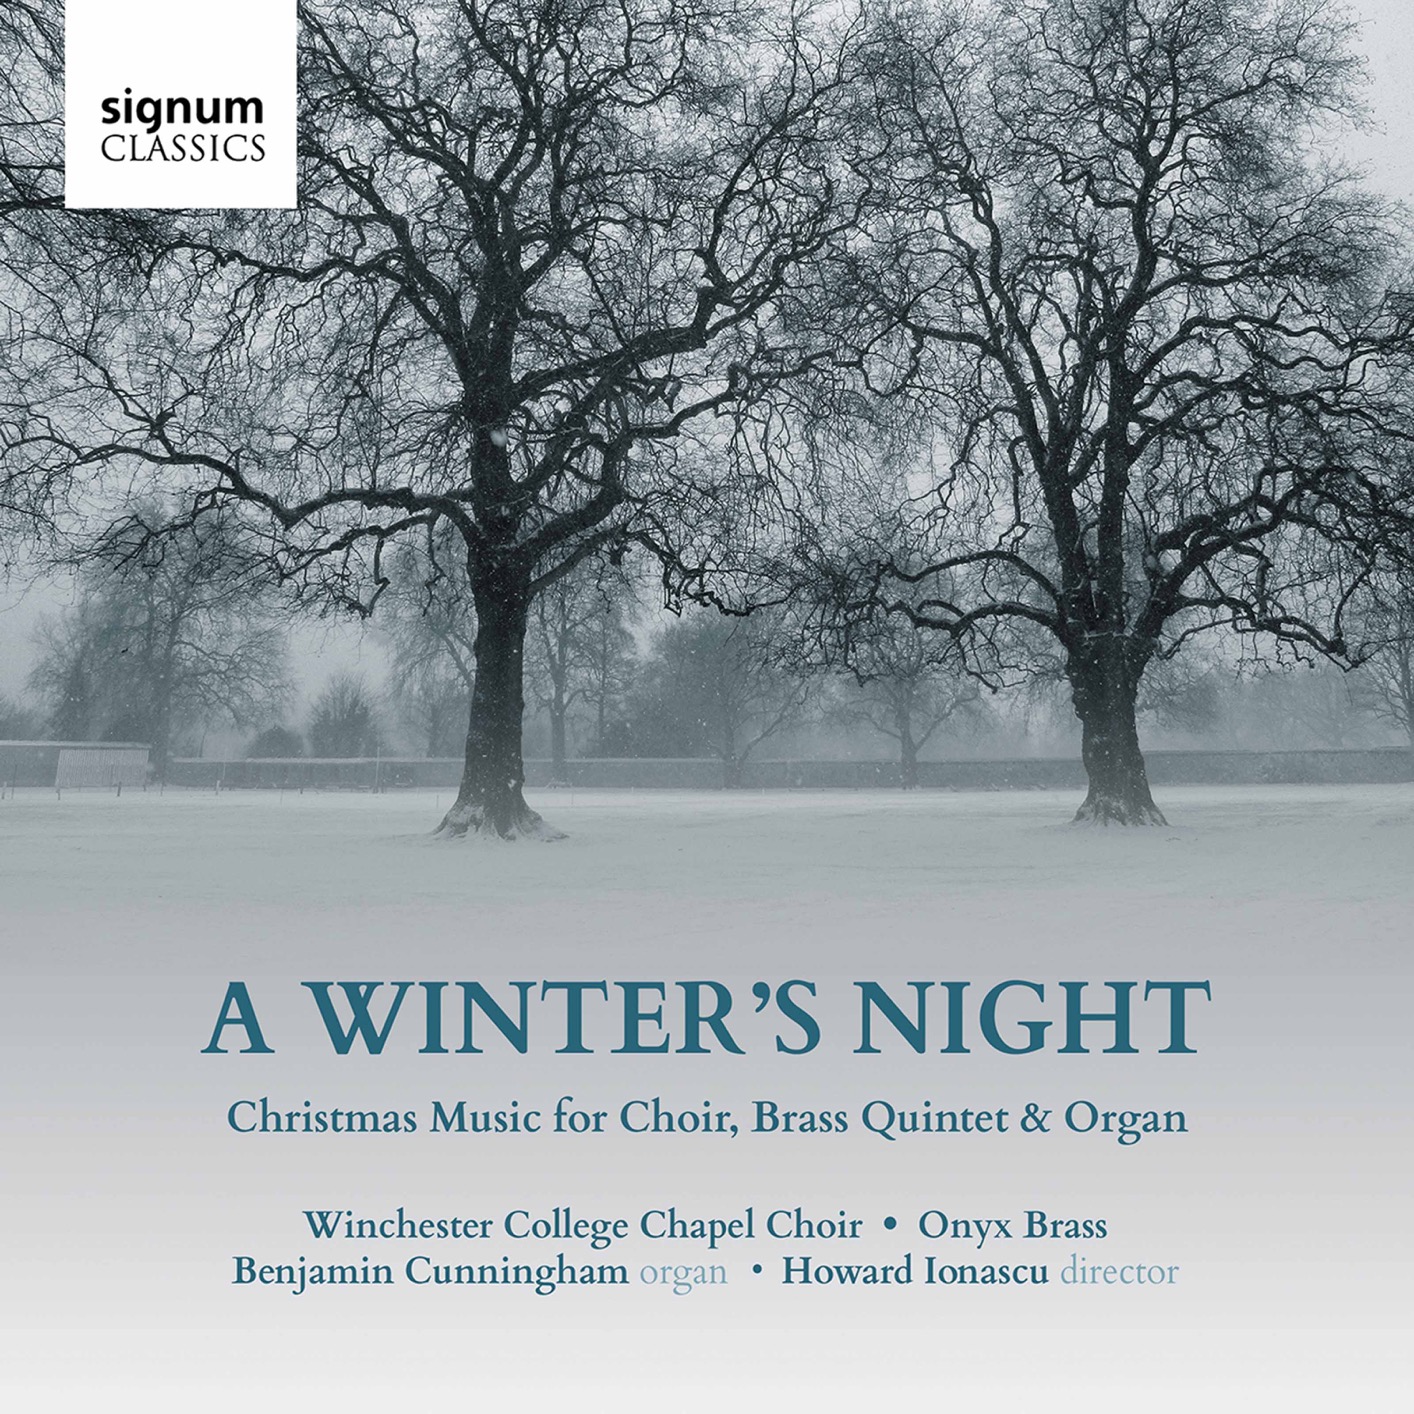 Onyx Brass - A Winter’s Night - Christmas Music for Choir, Brass Quintet & Organ (2020) [FLAC 24bit/96kHz]